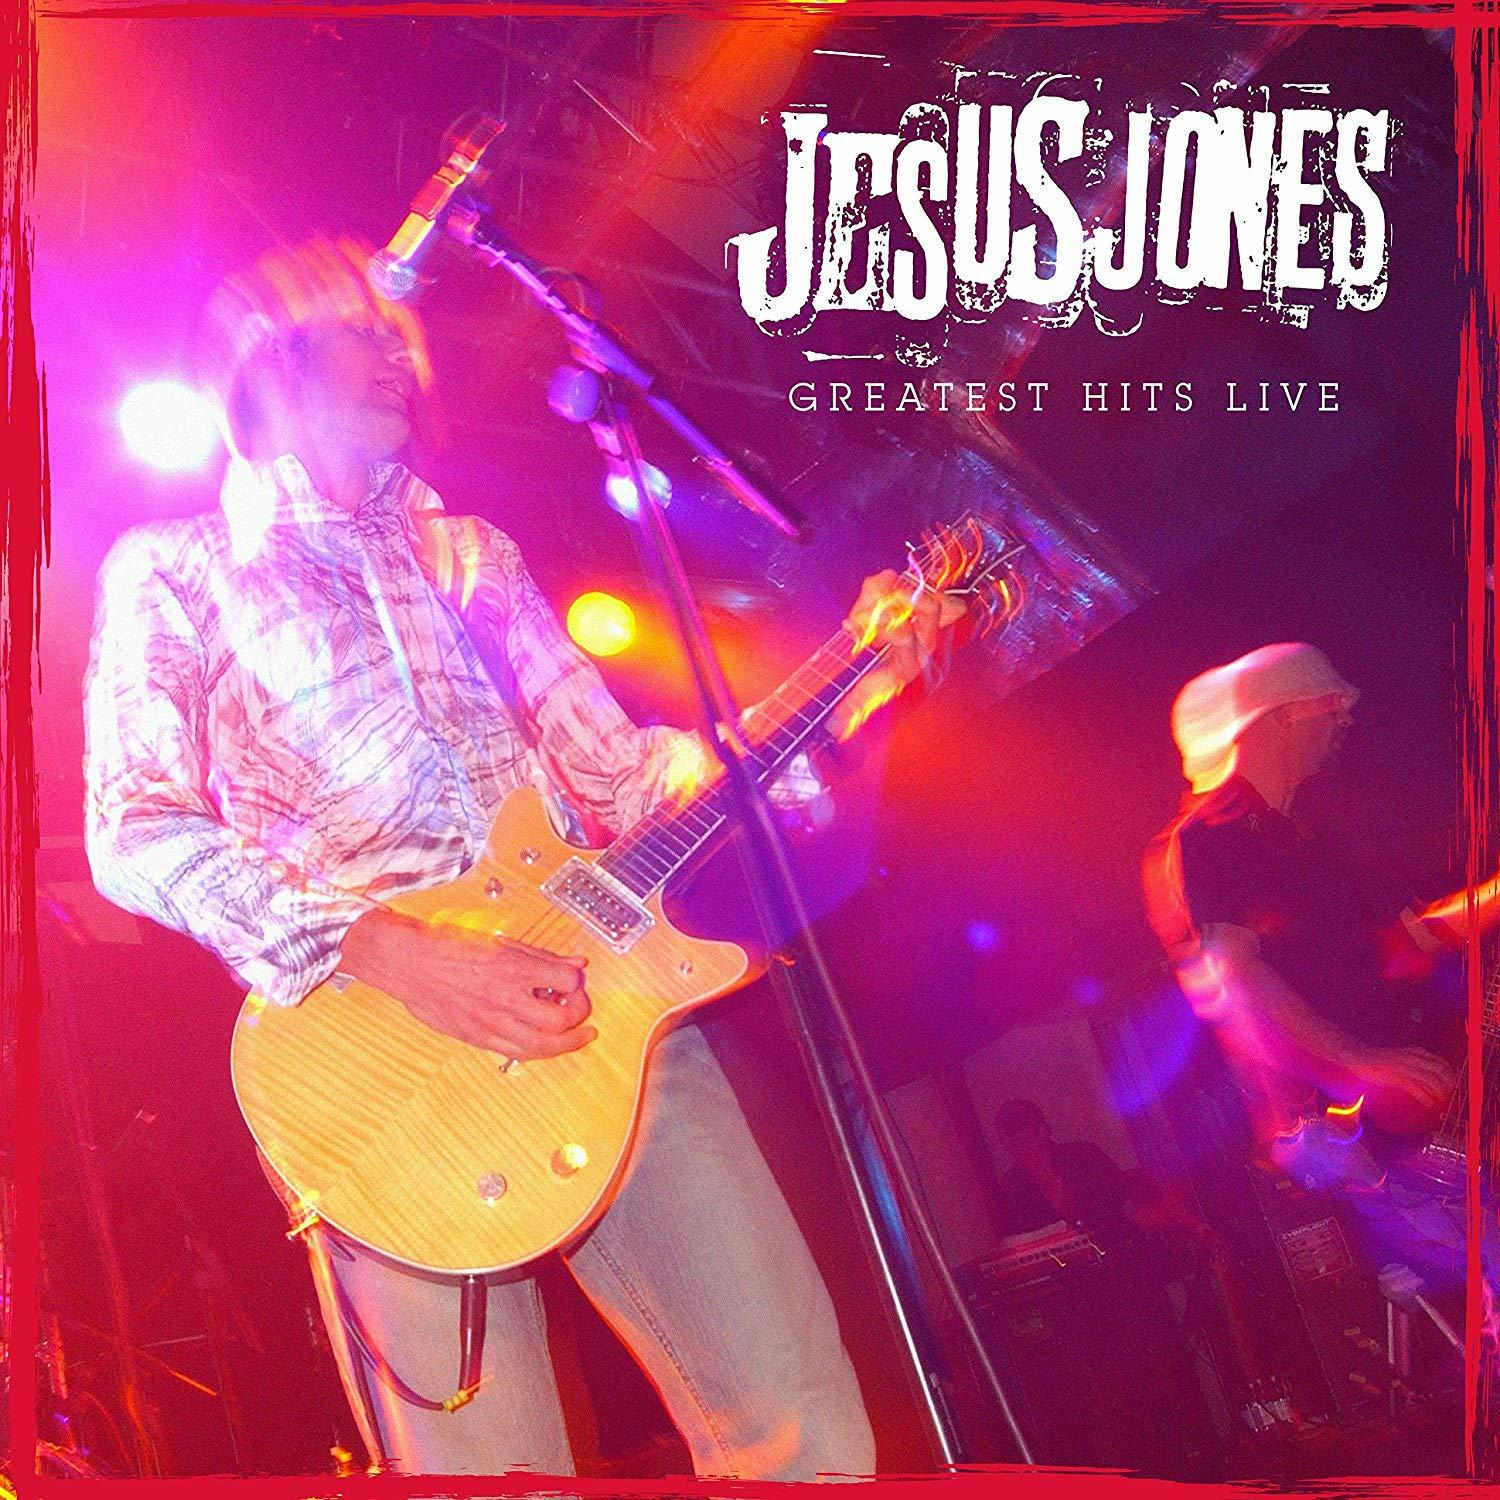 Hits Greatest - Jones - Live (Vinyl) Jesus